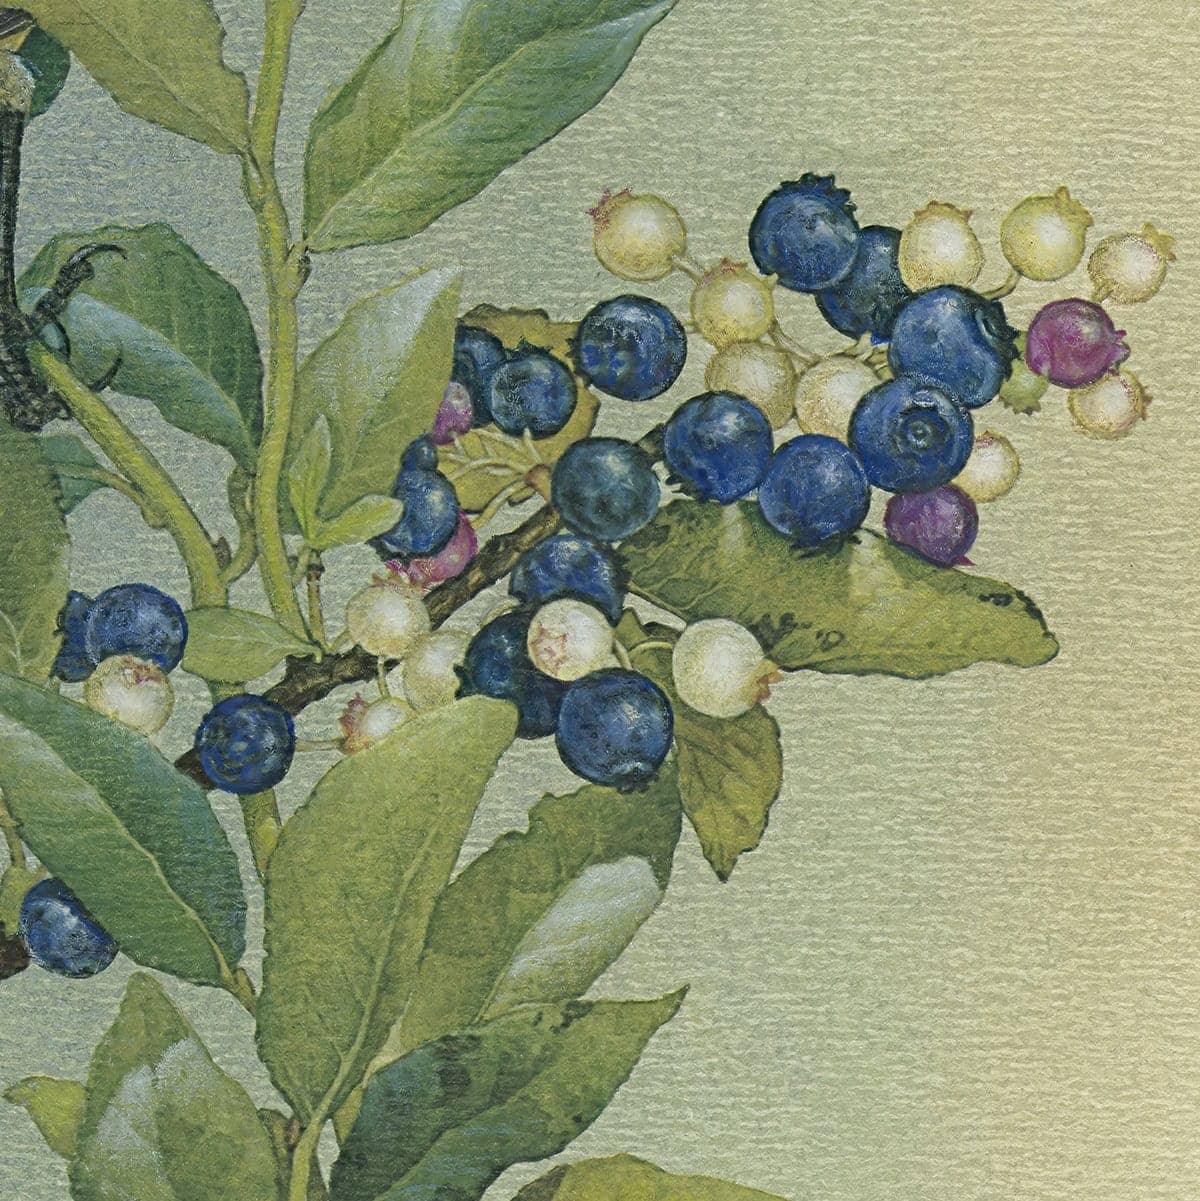 Cedar Waxwings in Blueberry Bush - Canvas Print | Artwork by Glen Loates